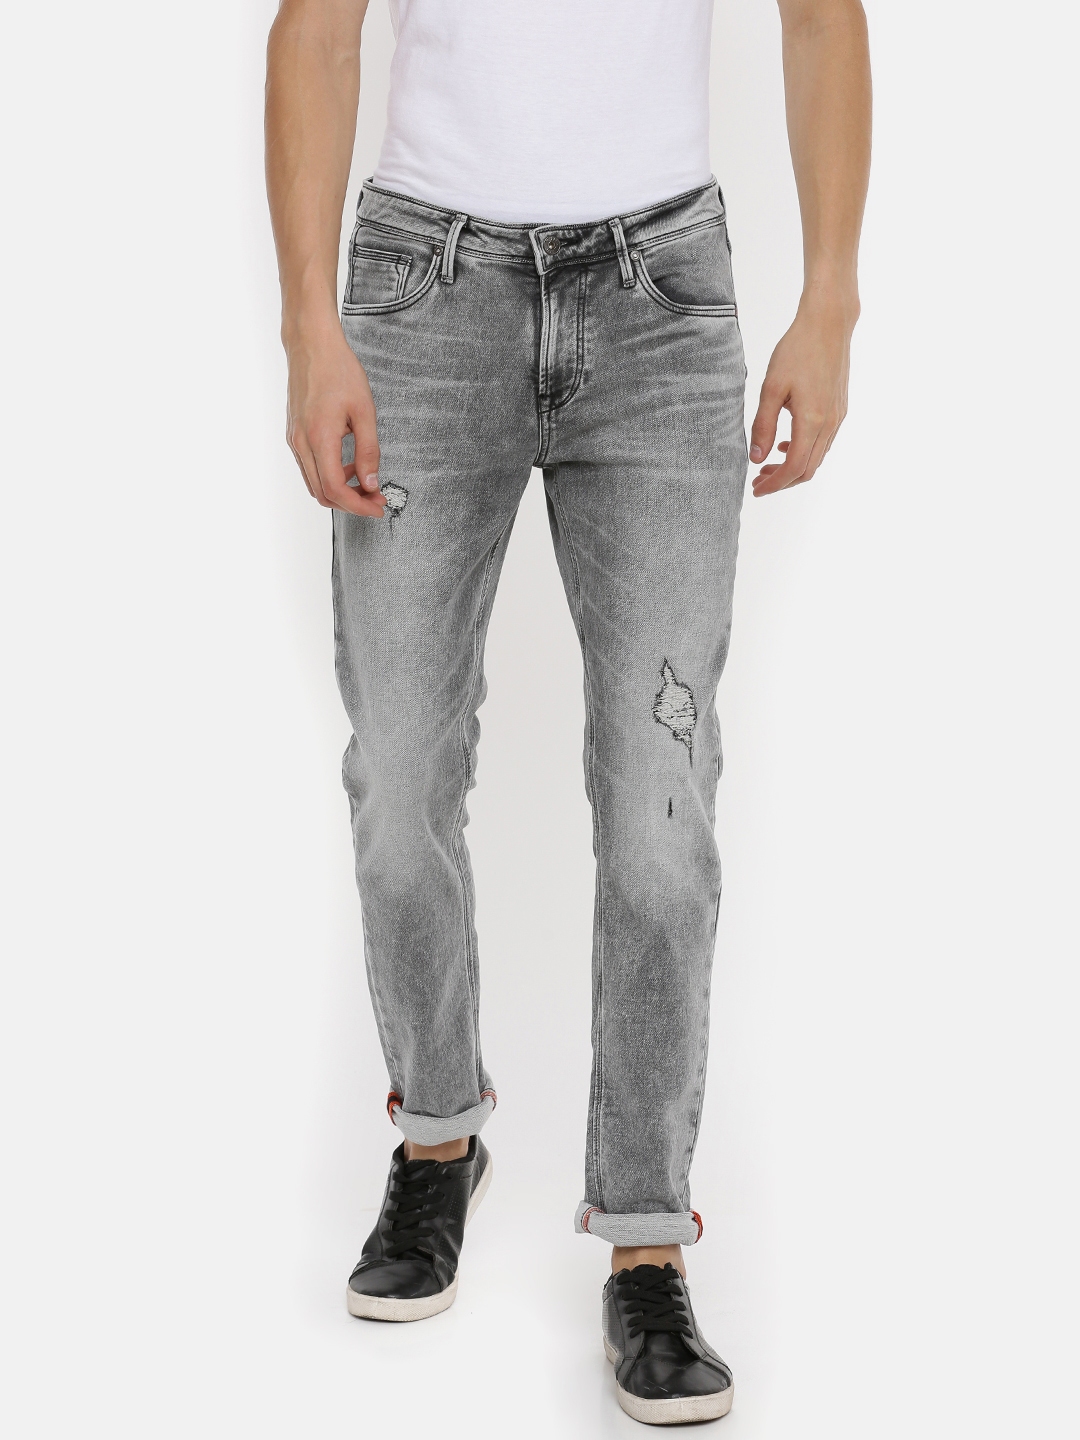 killer grey jeans